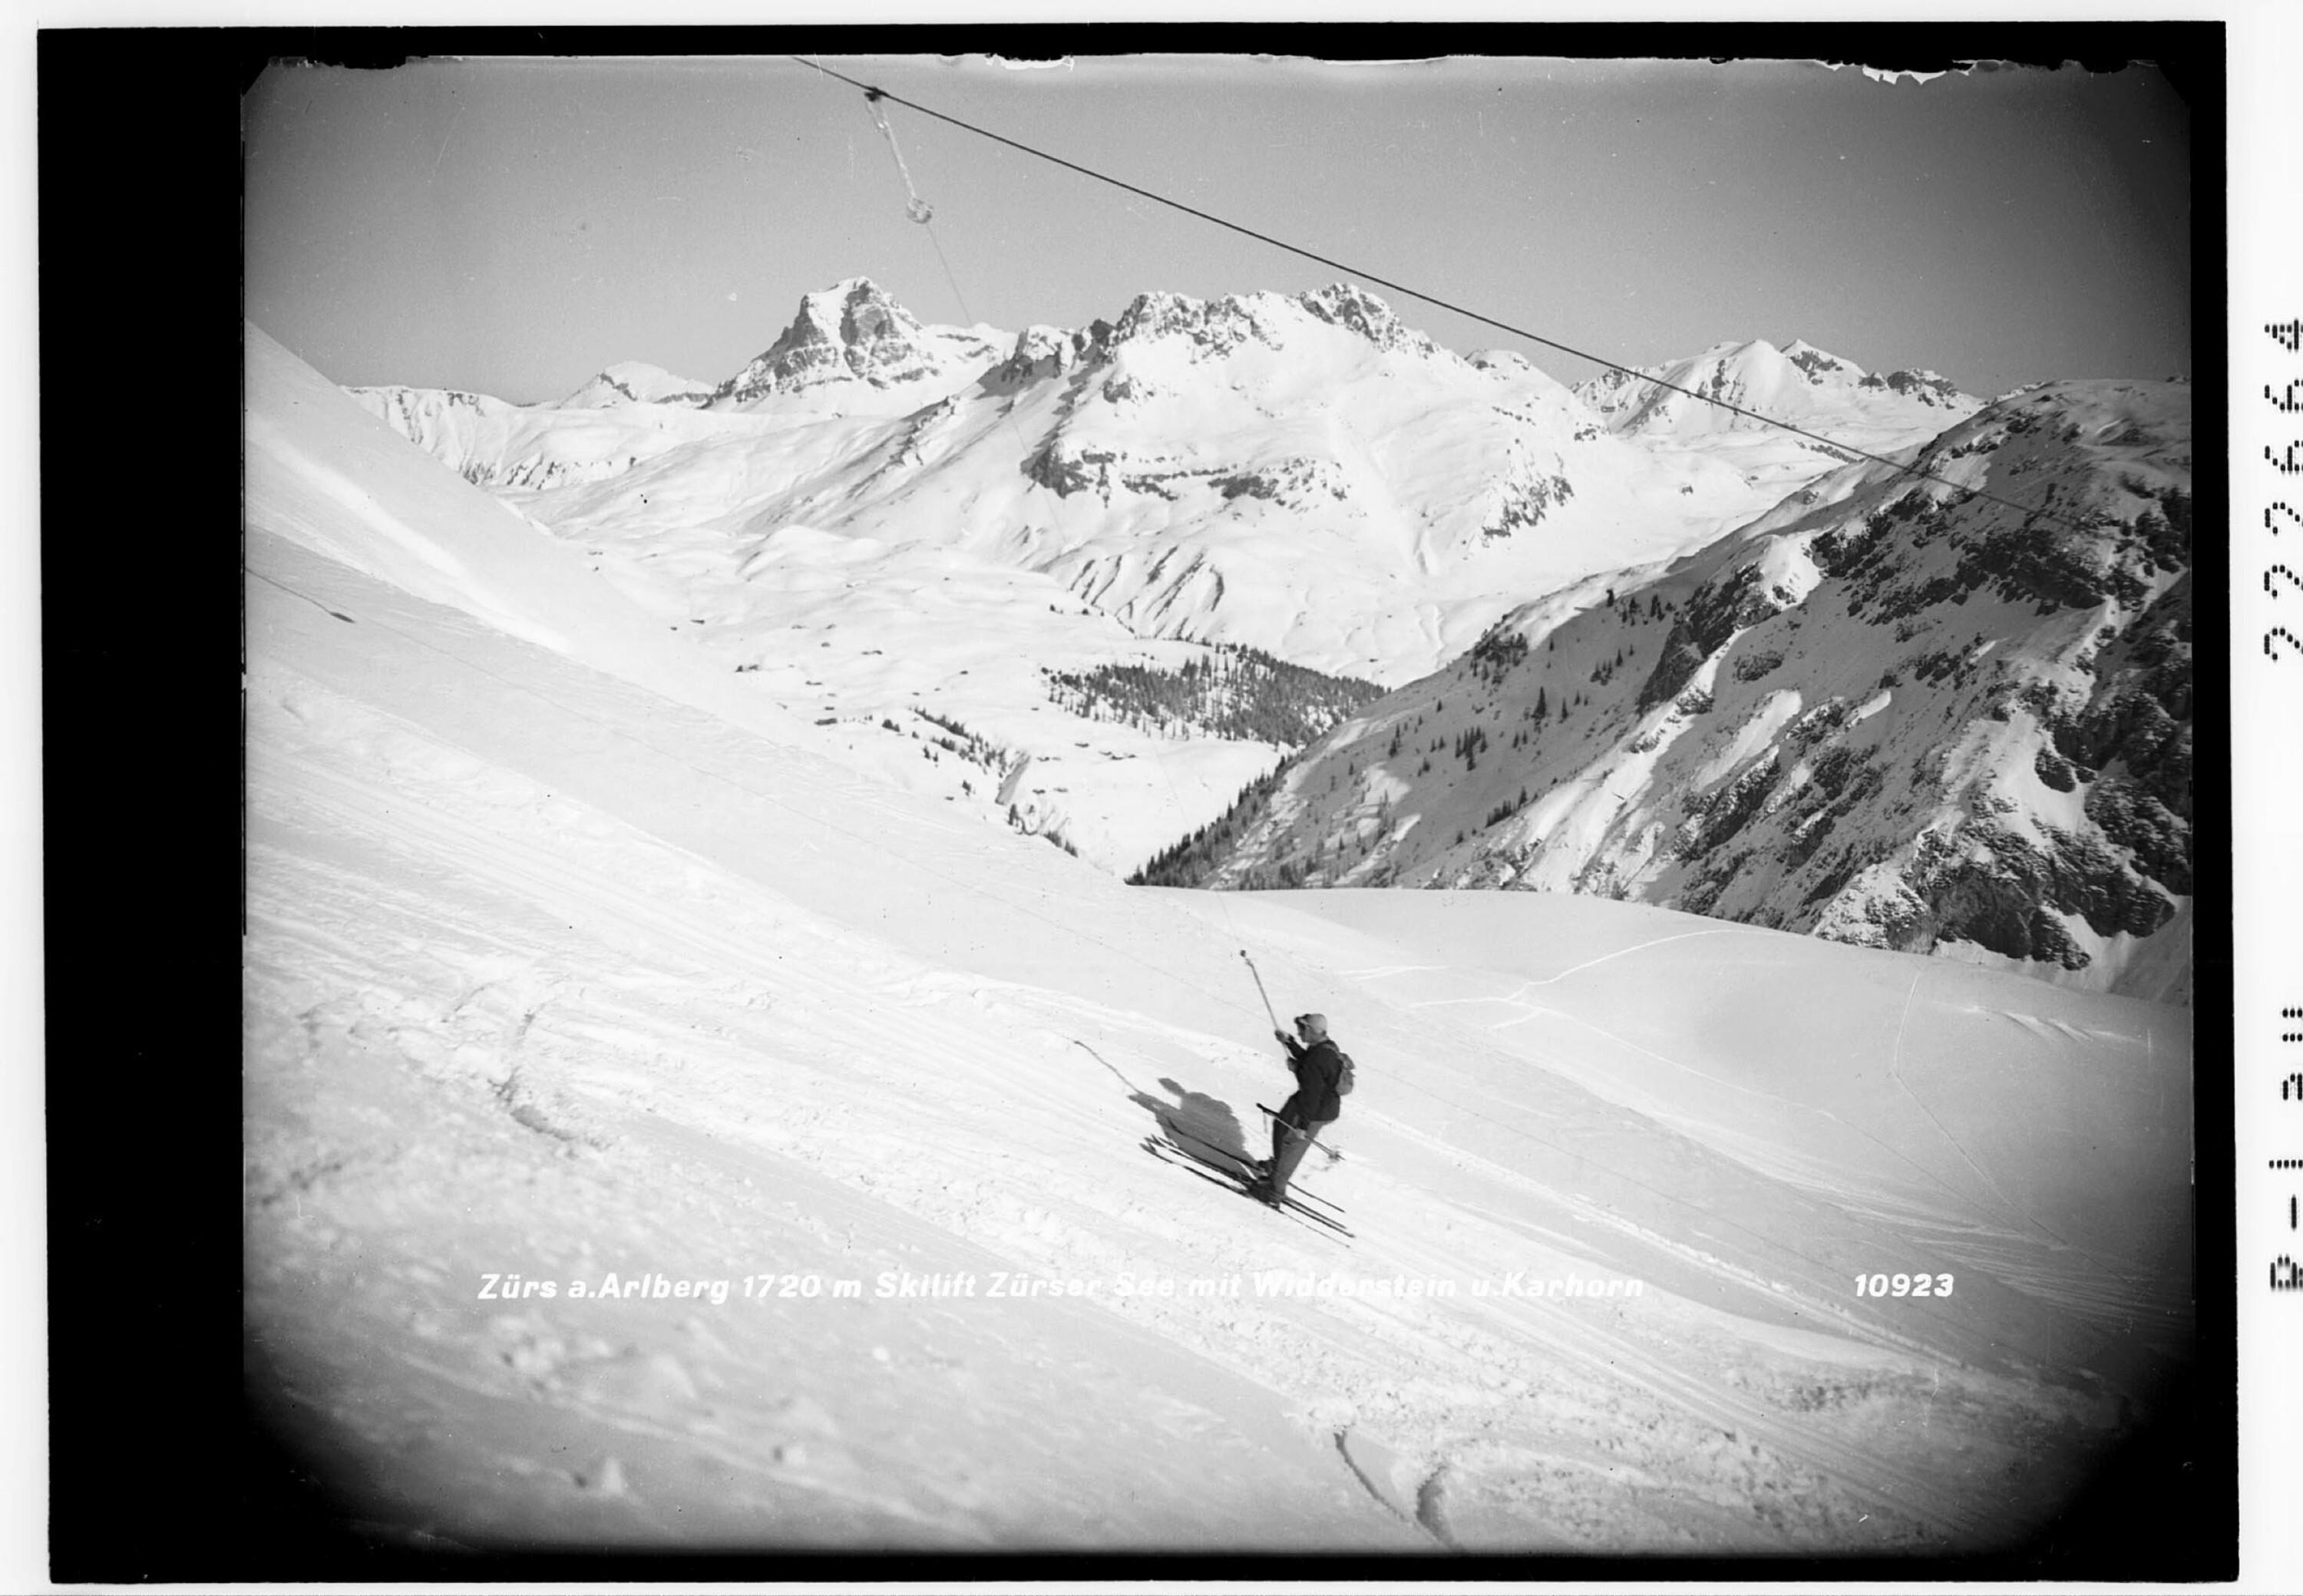 Zürs am Arlberg 1720 m / Skilift Zürser See mit Widderstein und Karhorn></div>


    <hr>
    <div class=